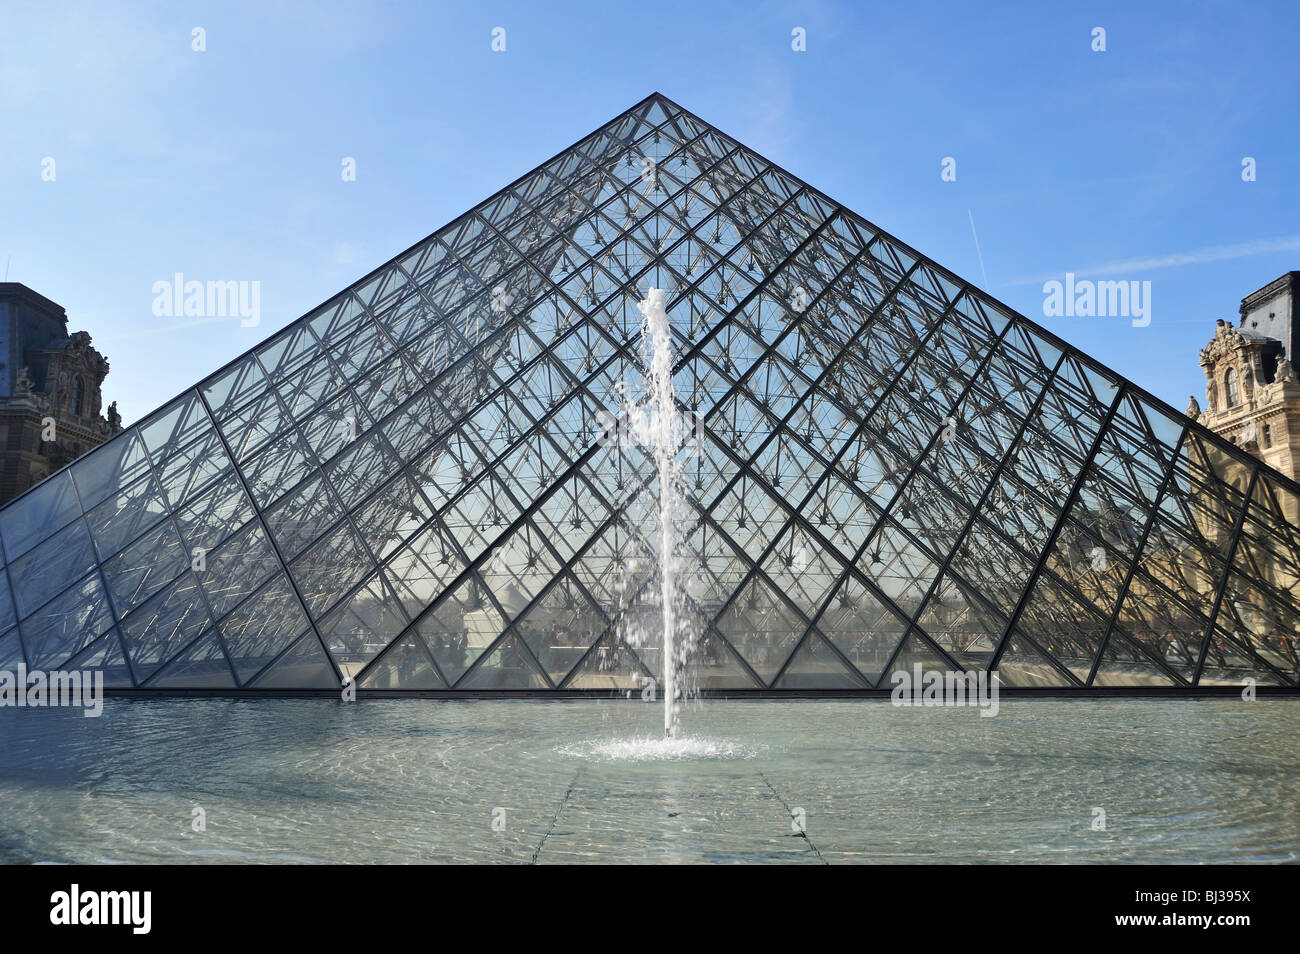 Die Pyramide, Le Louvre, Paris, Frankreich Stockfoto